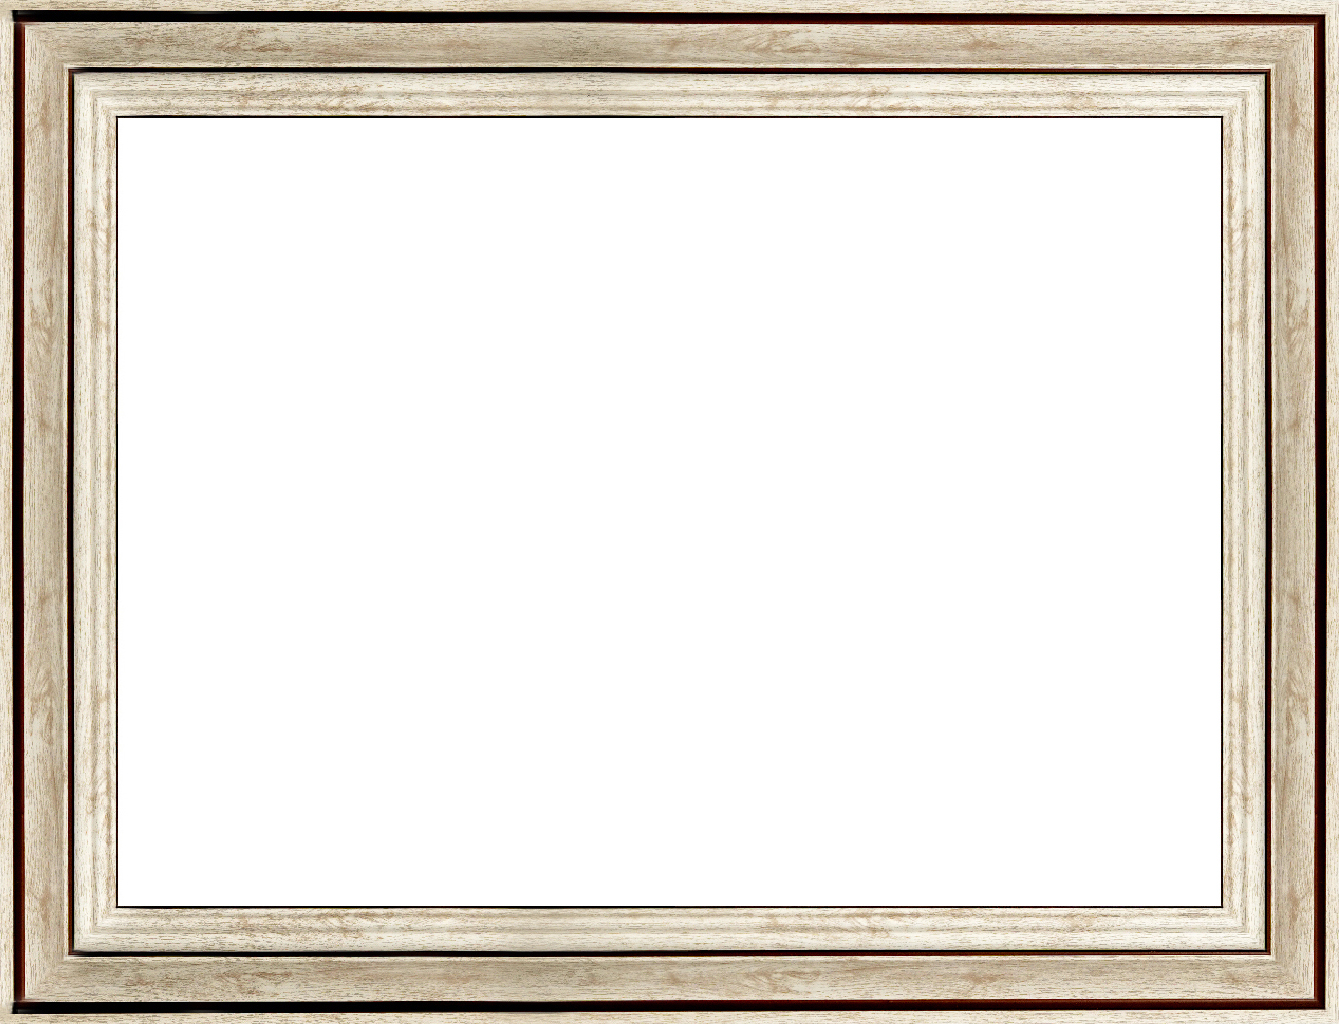 Khung mẫu SHI39 Vân gỗ trắng kẻ nâu bản 6cm